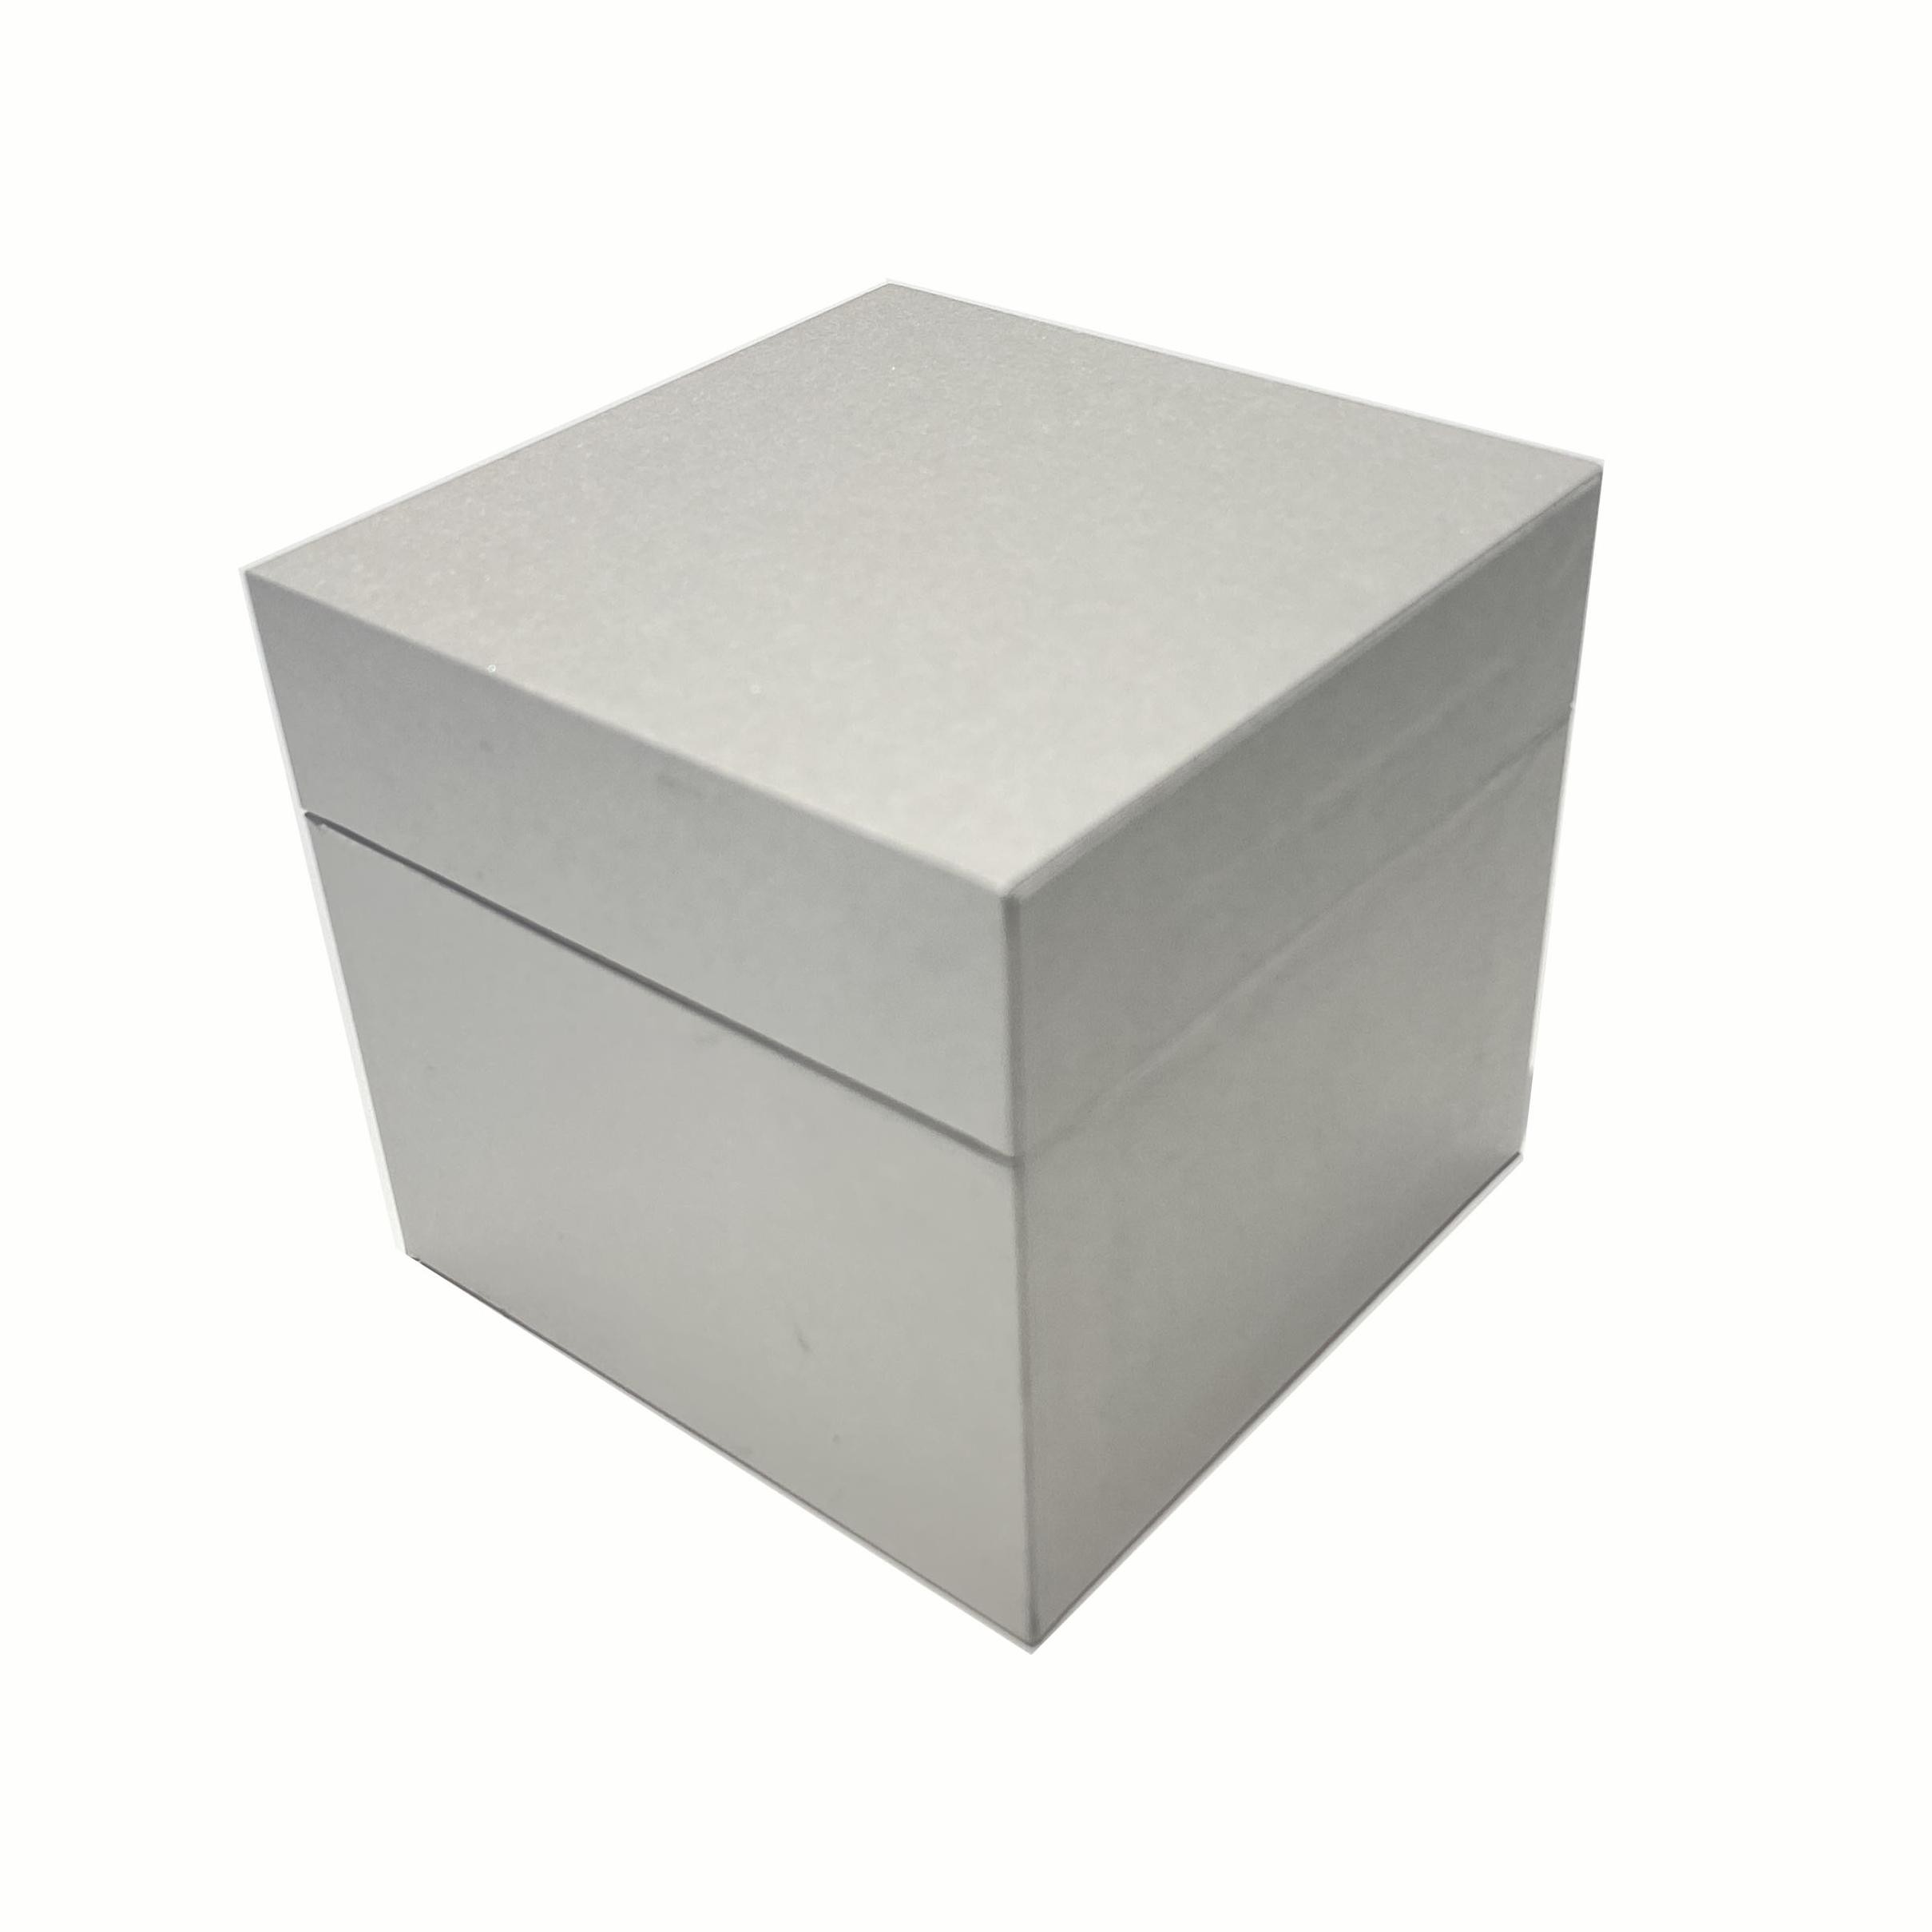 White pearlescent paper high-grade box Square perfume box